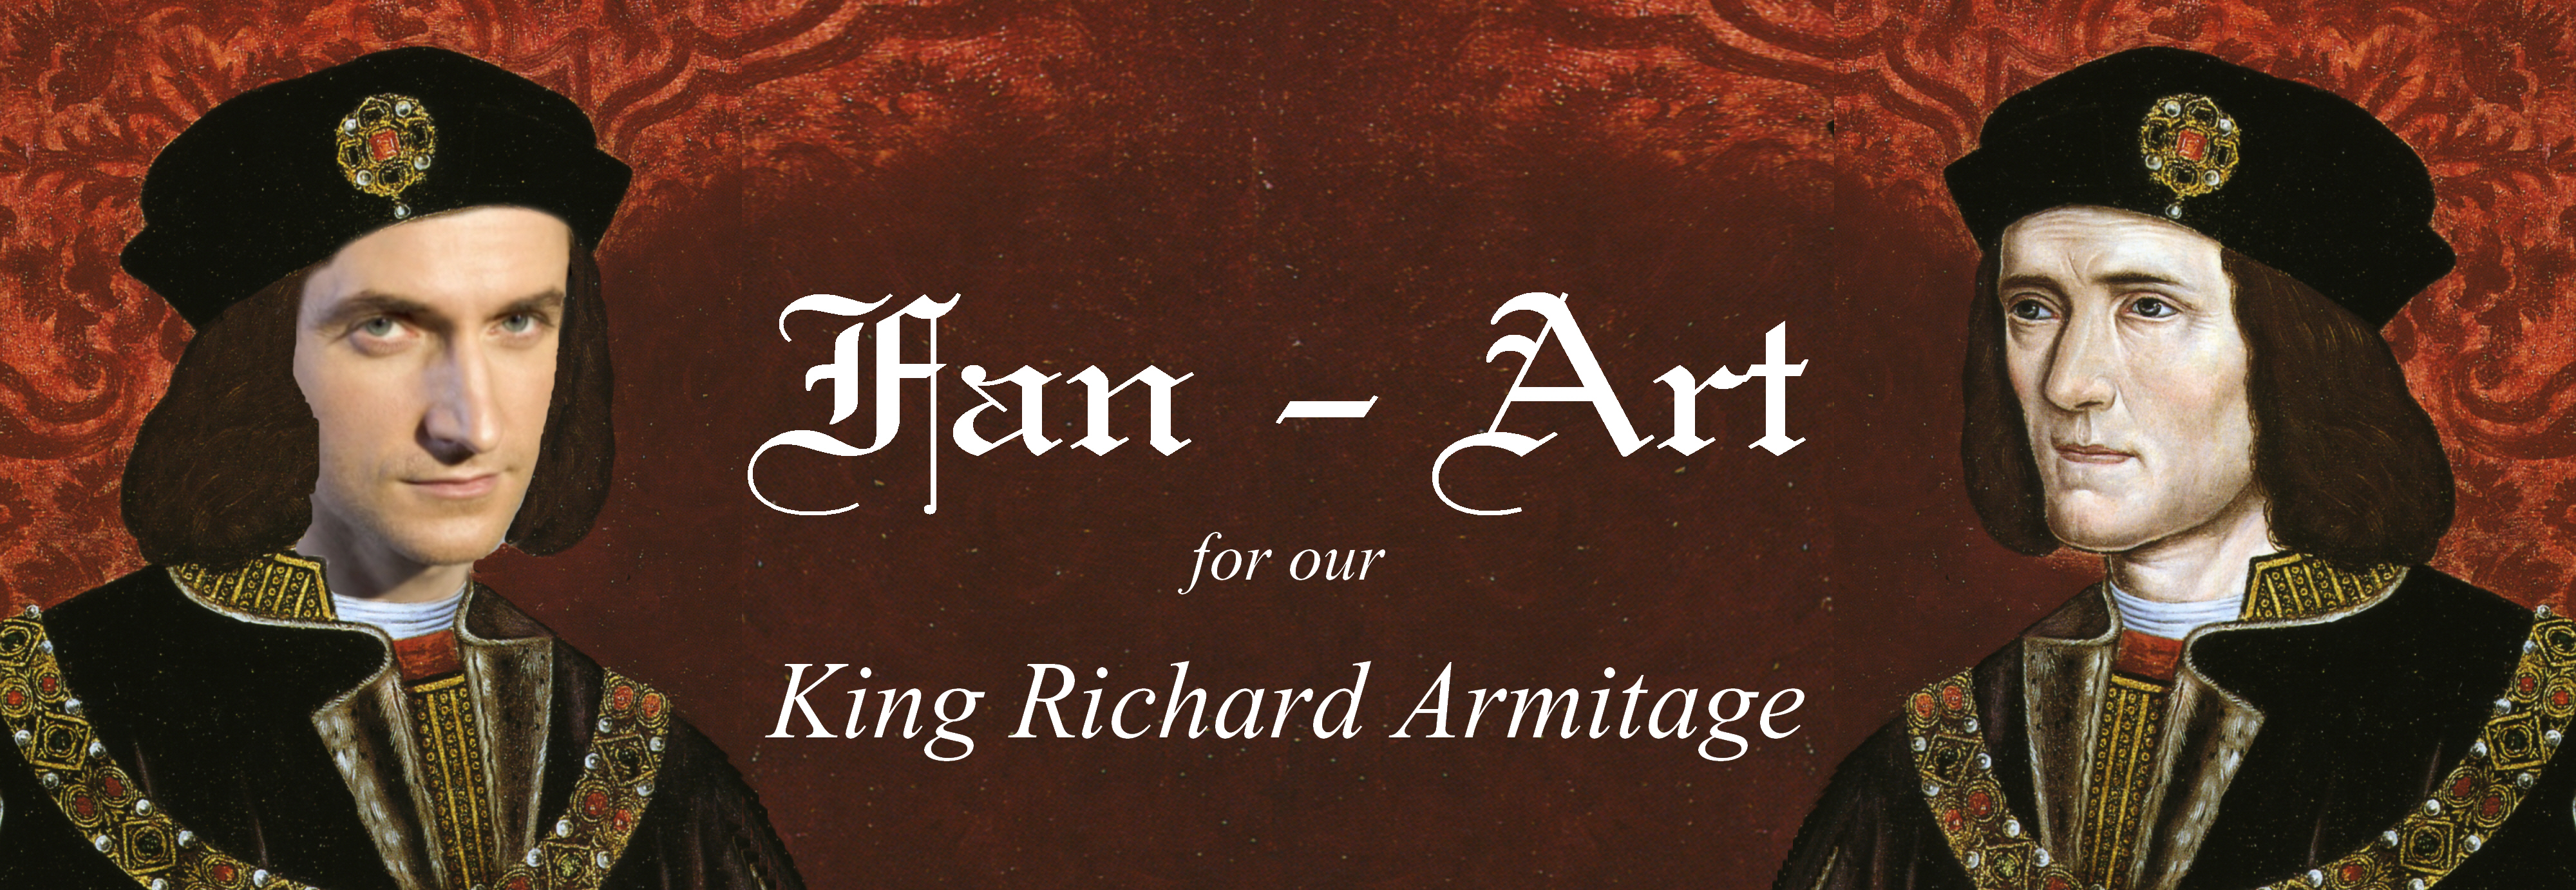 Fan-Art Banner - KingRichardArmitage